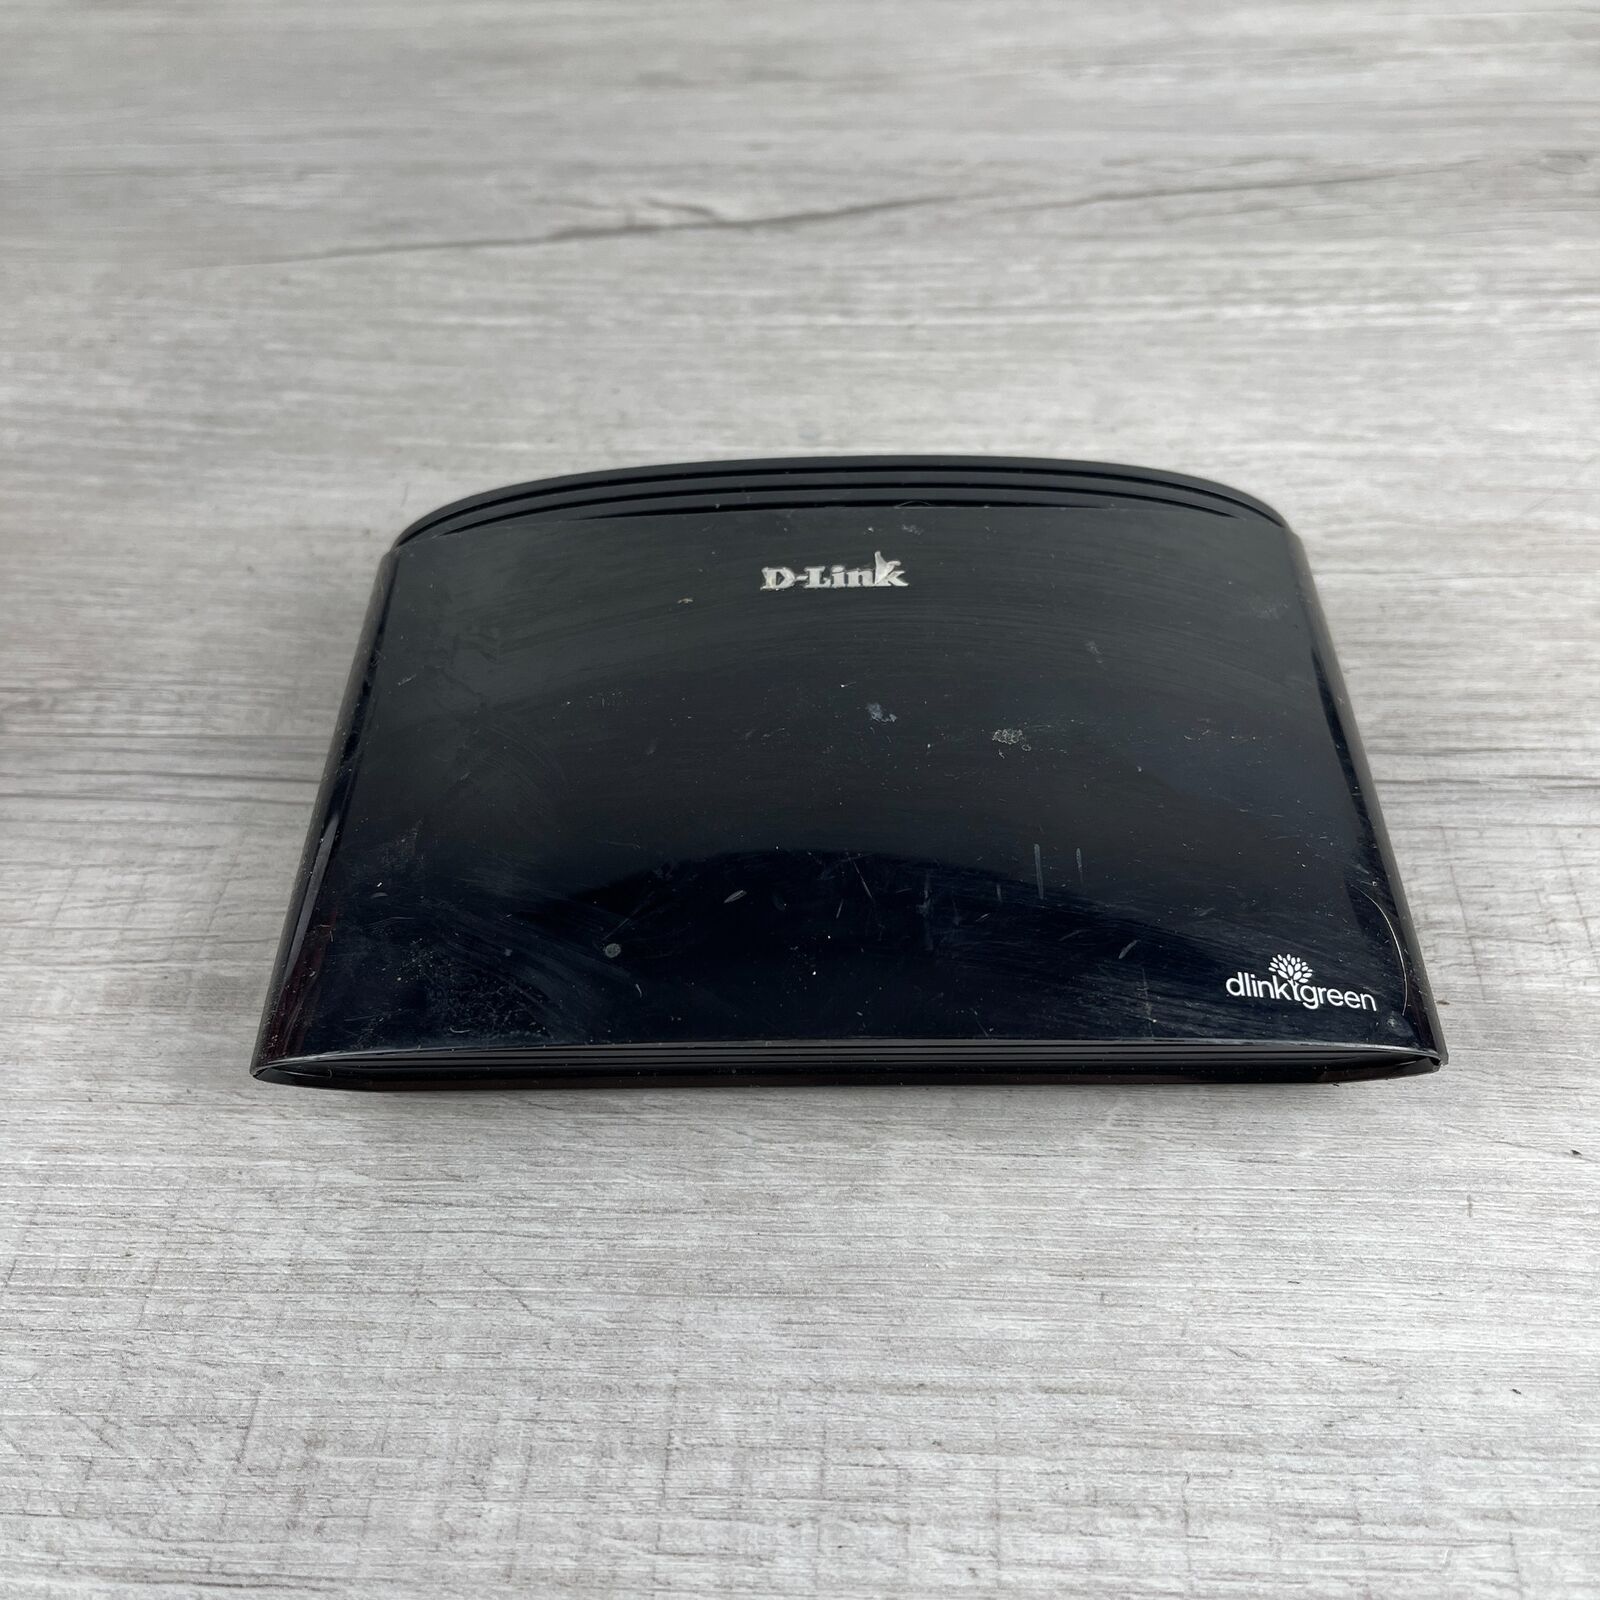 D-Link DGS-1005G Black Wired 5-Port Gigabit Ethernet Dlink Green Desktop Switch